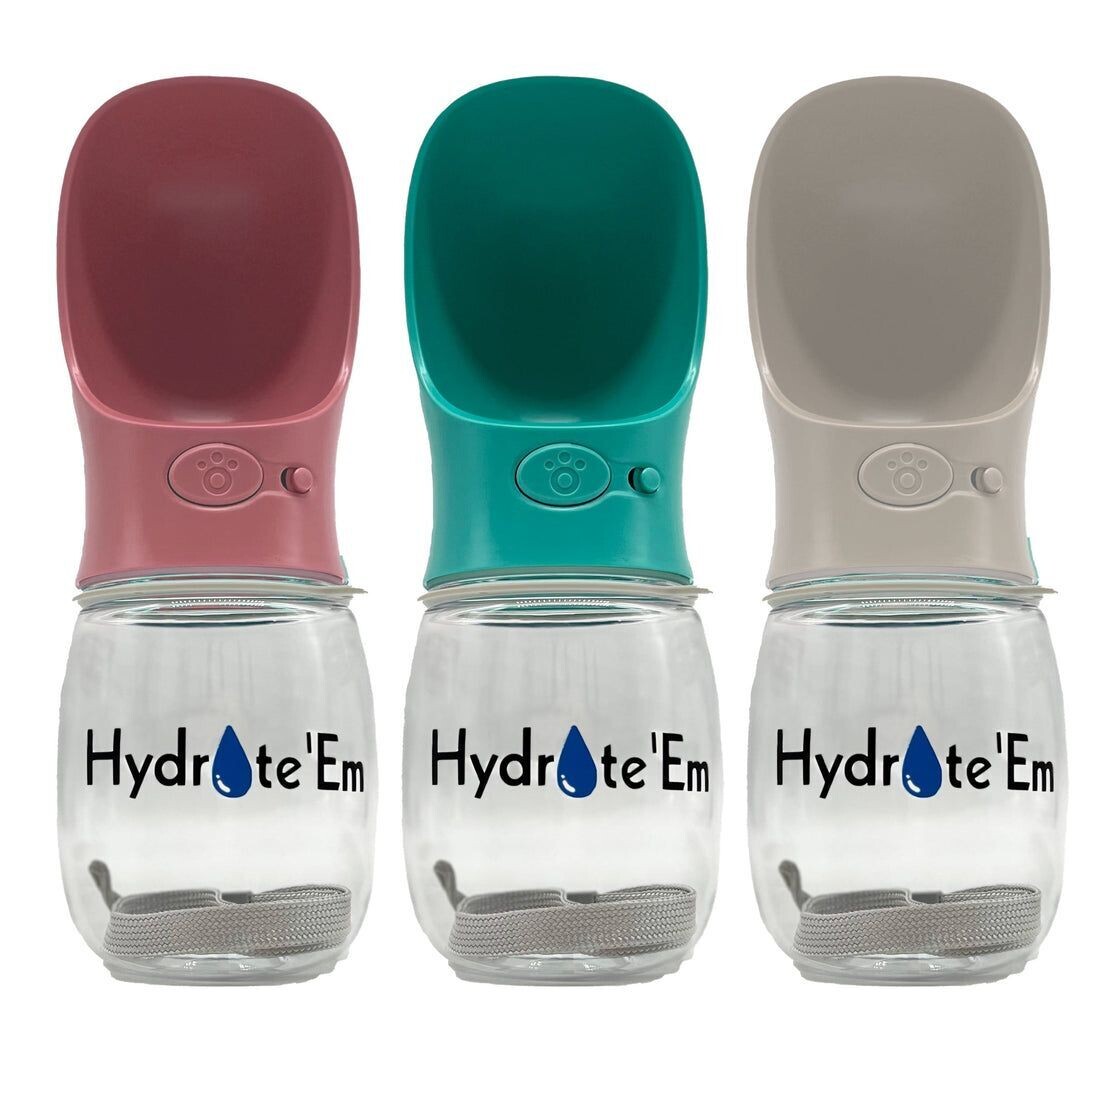 Hydrate'Em Travel Water Bottle